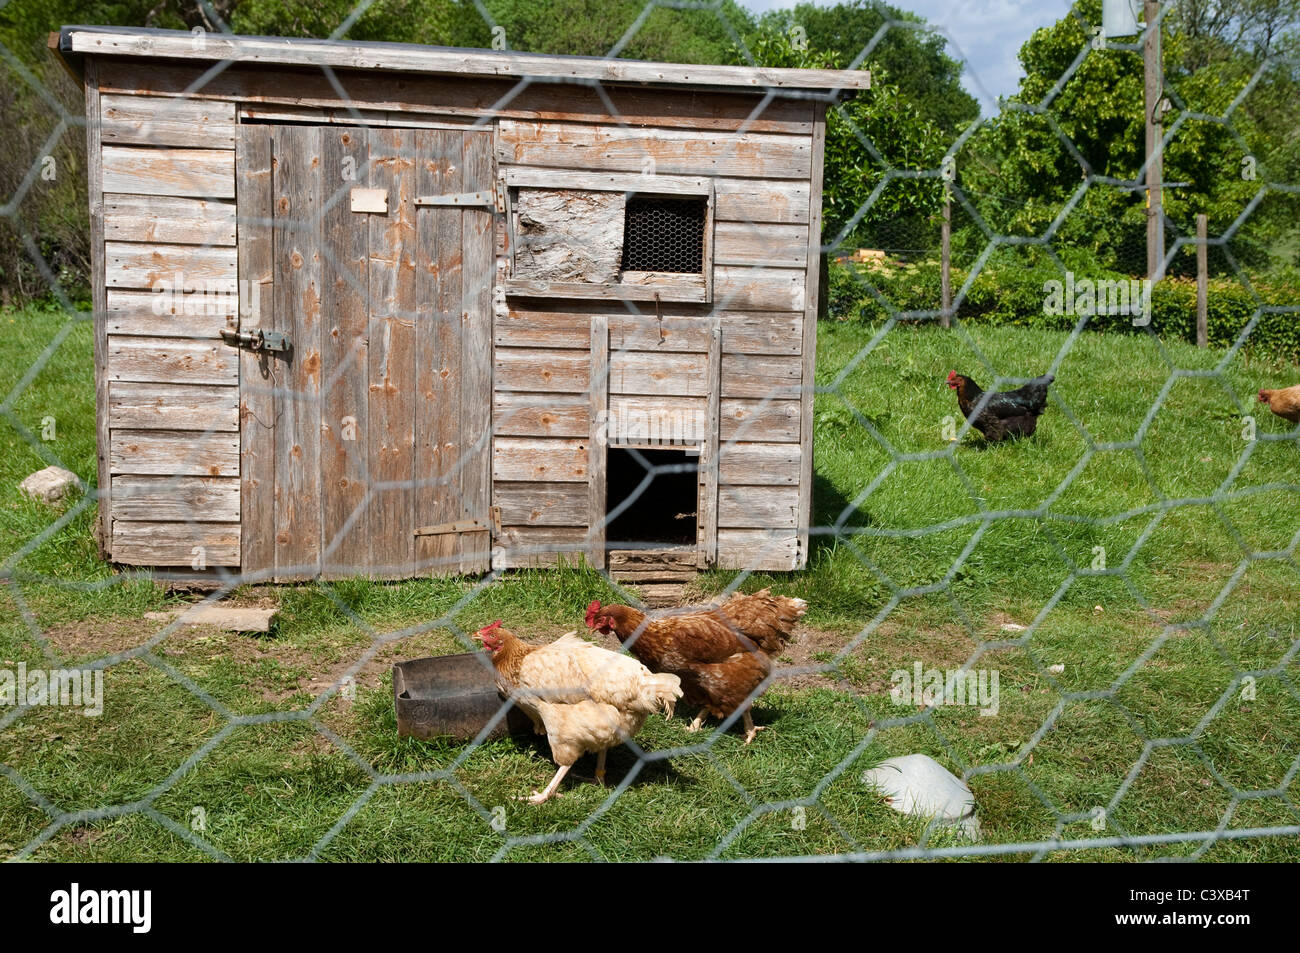 Hühnerstall mit Freerange glücklichen Hühnern. Cotswolds, UK. (Vordergrund Maschendraht softish kurzgefasst - Hühnerstall scharf.) Stockfoto